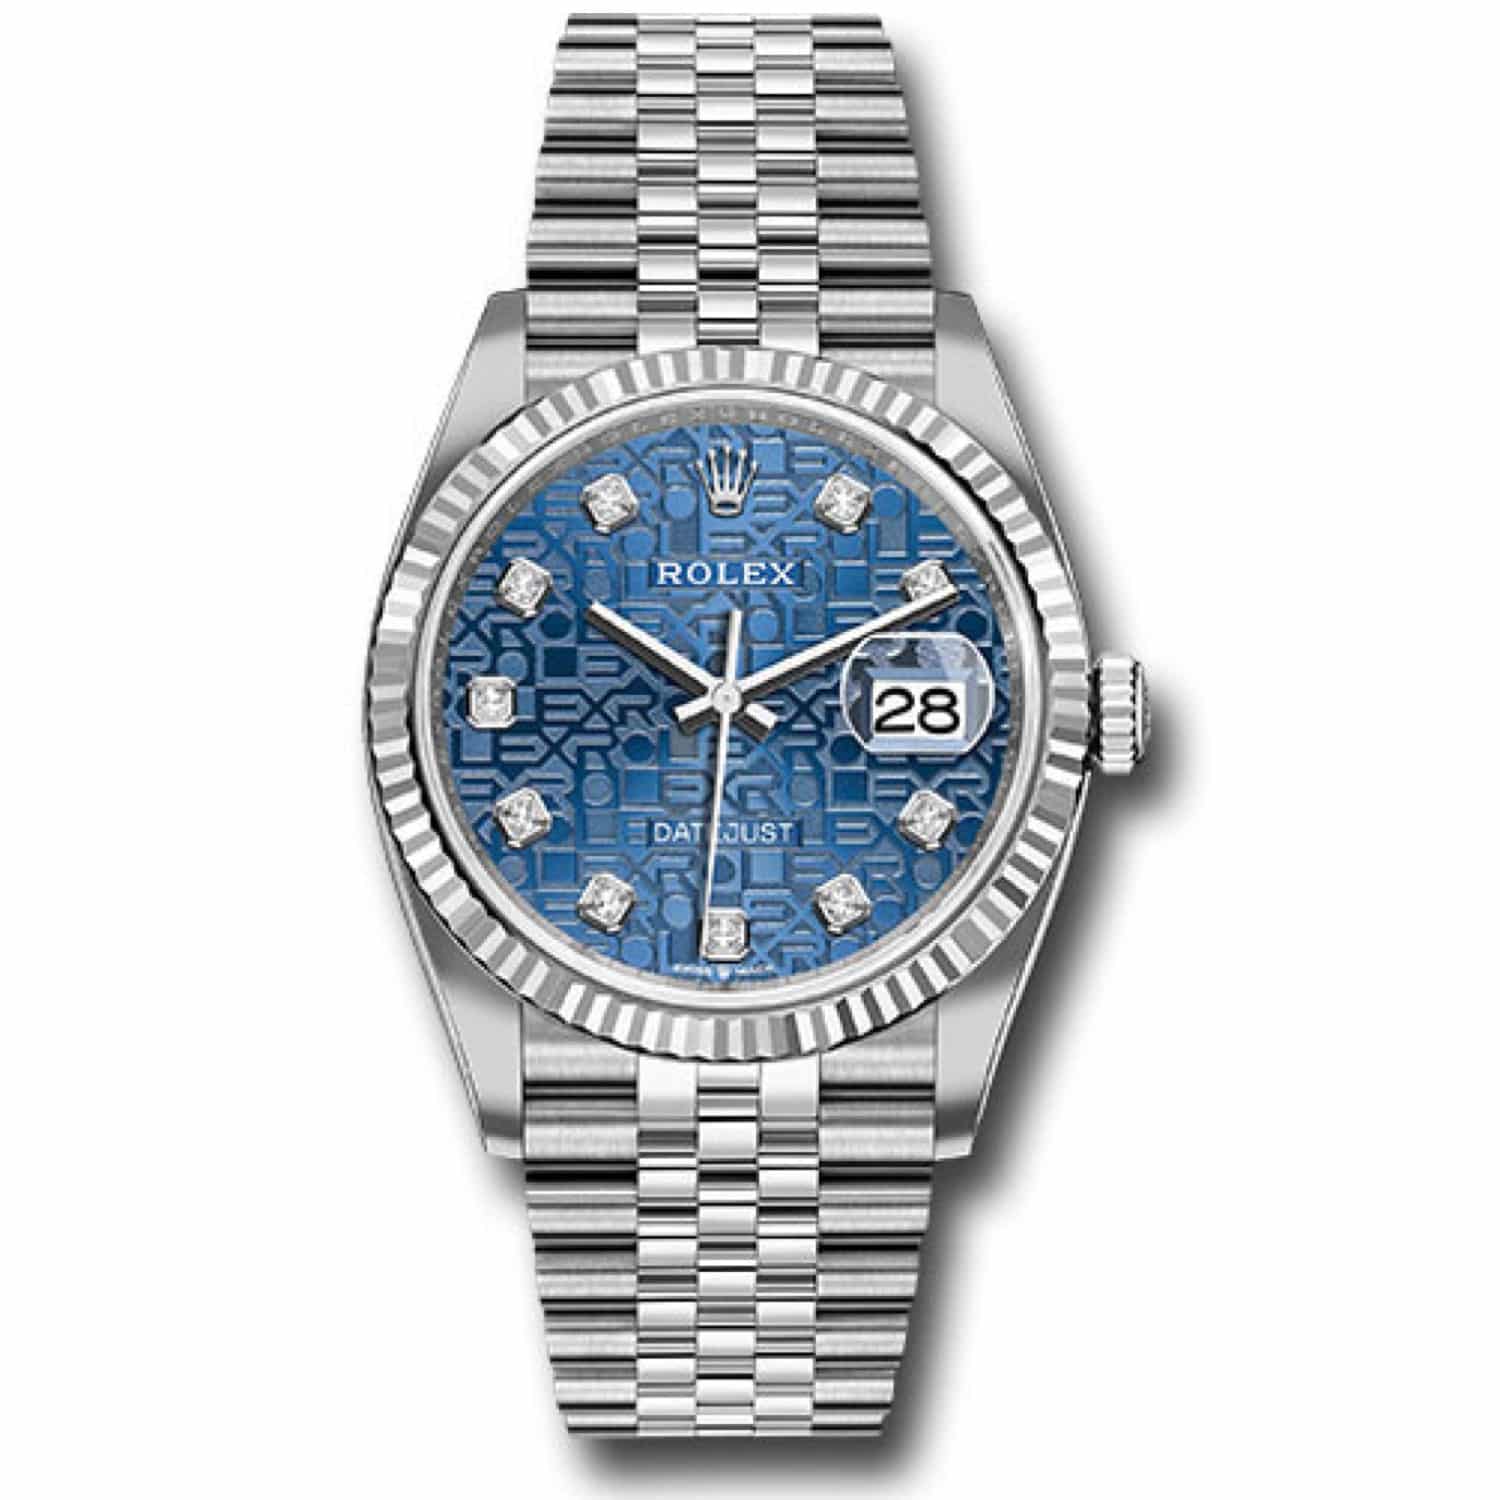 Rolex Datejust 36mm 126234 Stainless Steel Men's Watch